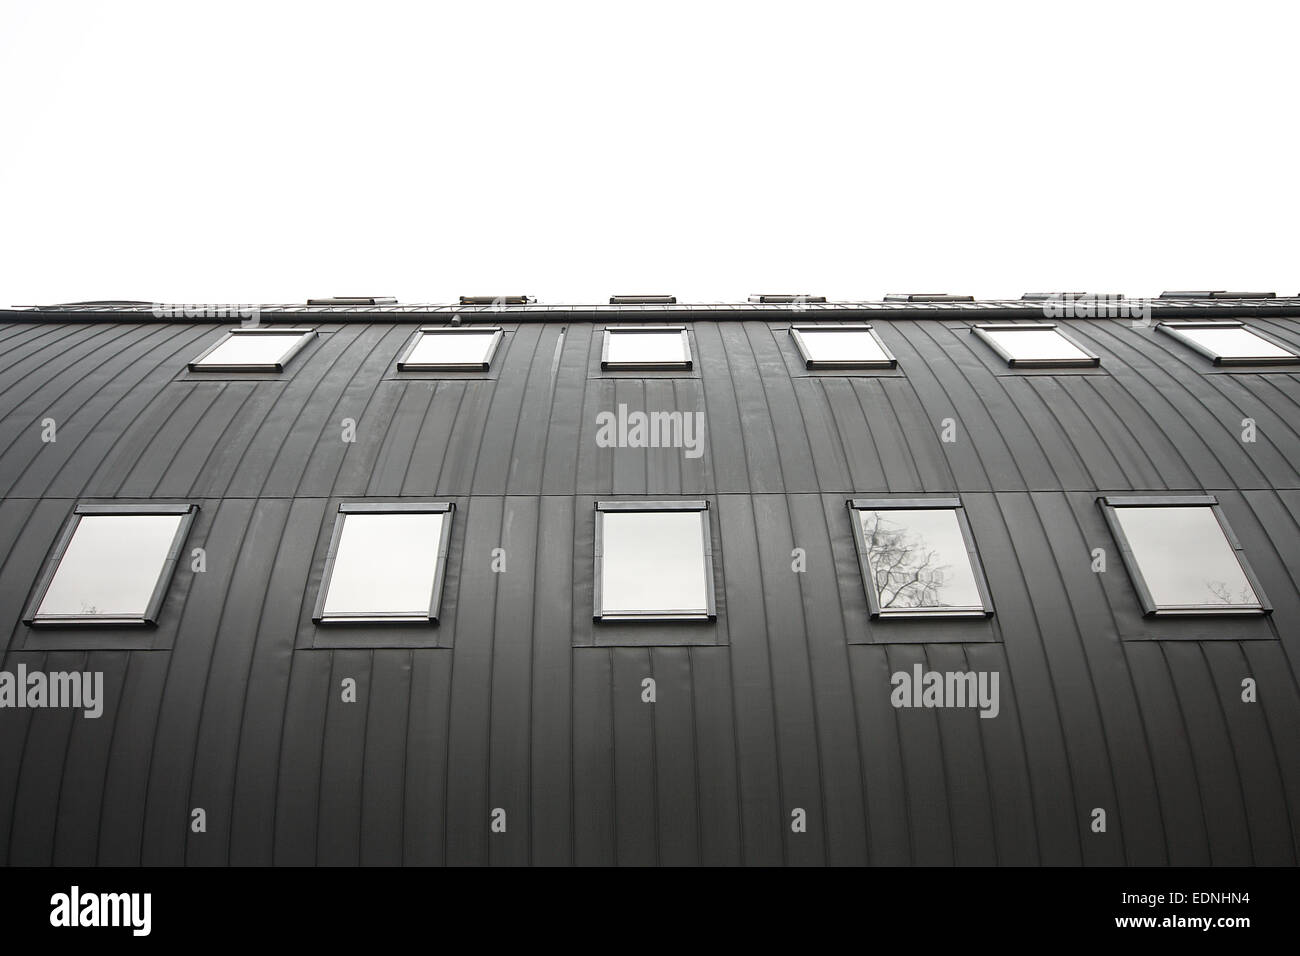 Abstrakt Architektur in schwarz / weiß Stockfoto